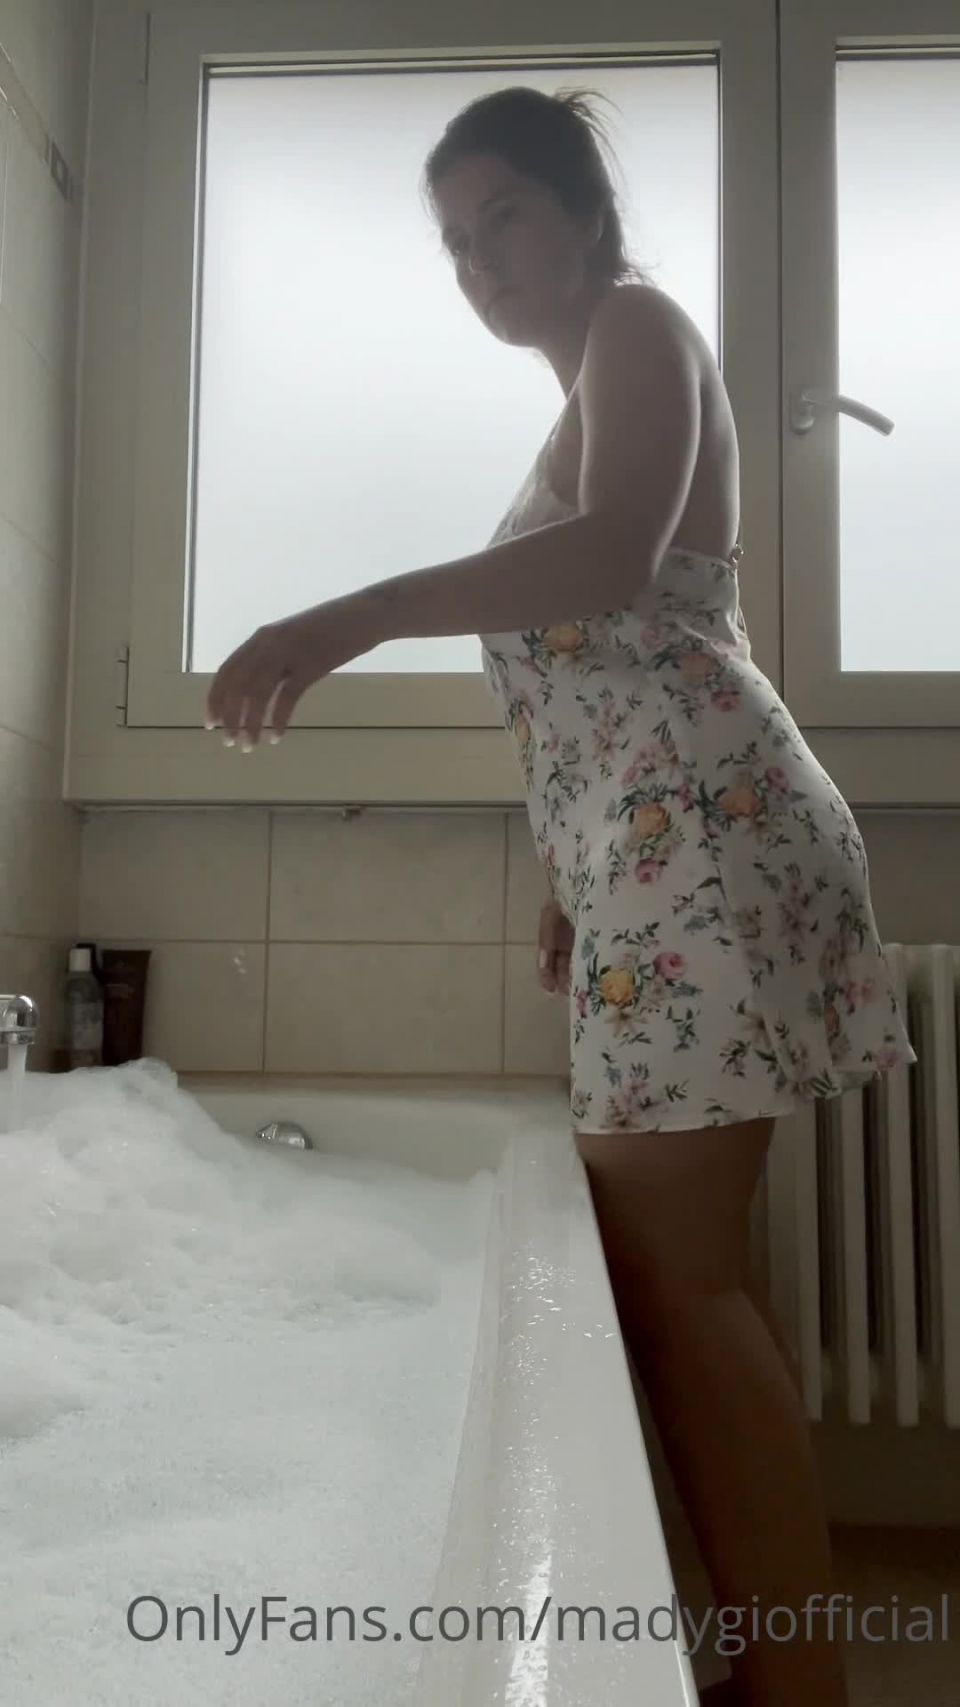 adult clip 1 OnlyFans – Mady Gio Nudes Bathtub on femdom porn sissy femdom